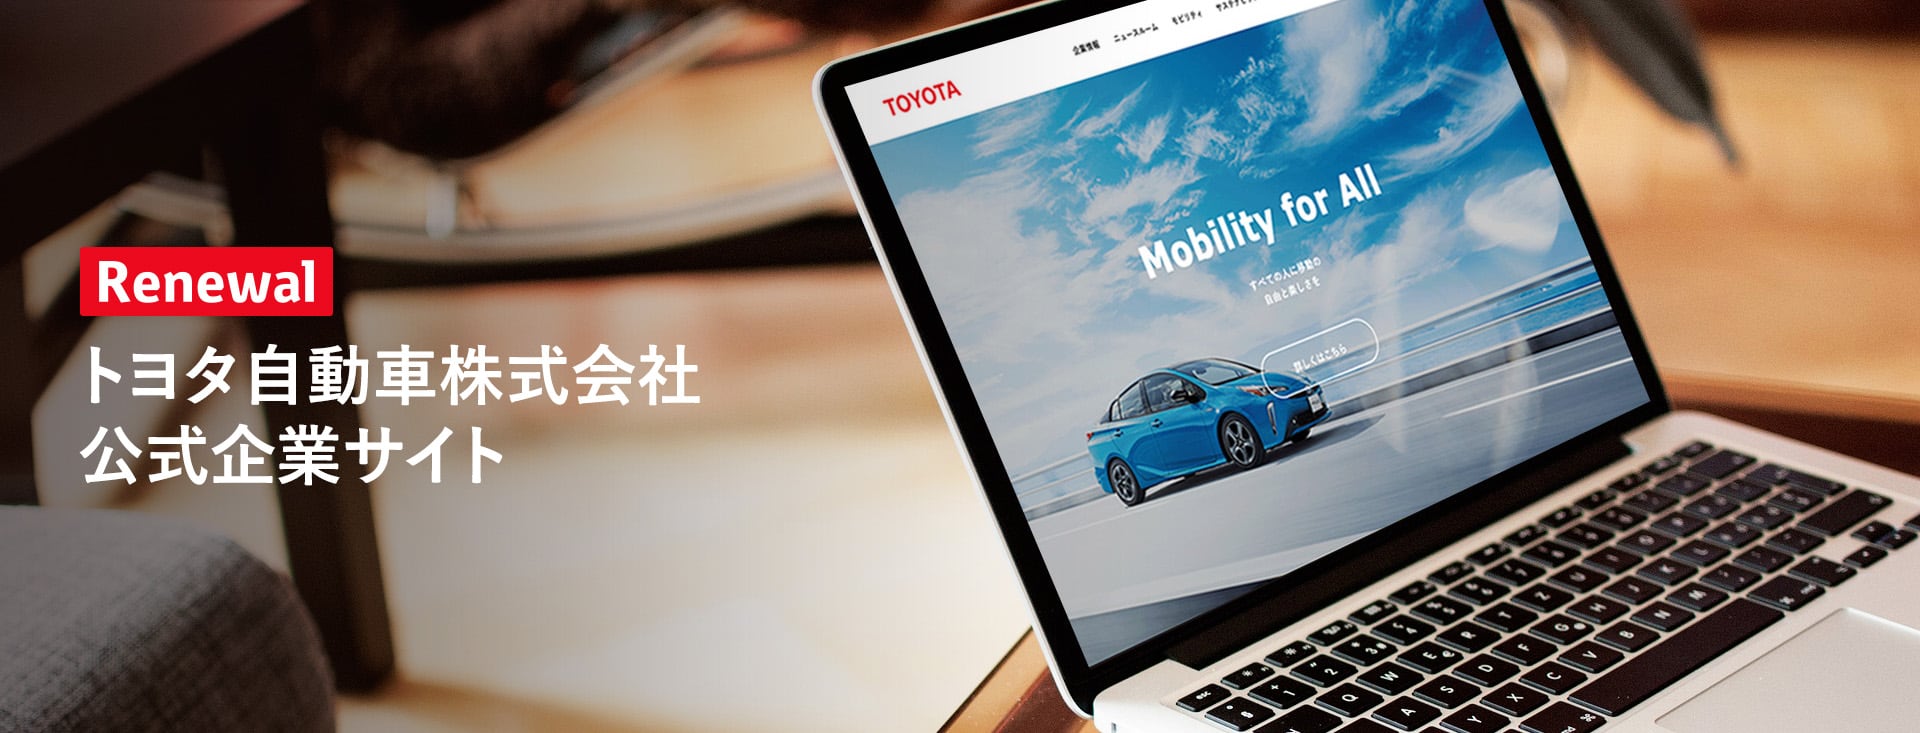 「トヨタ自動車株式会社公式企業サイト」リニューアルのご案内